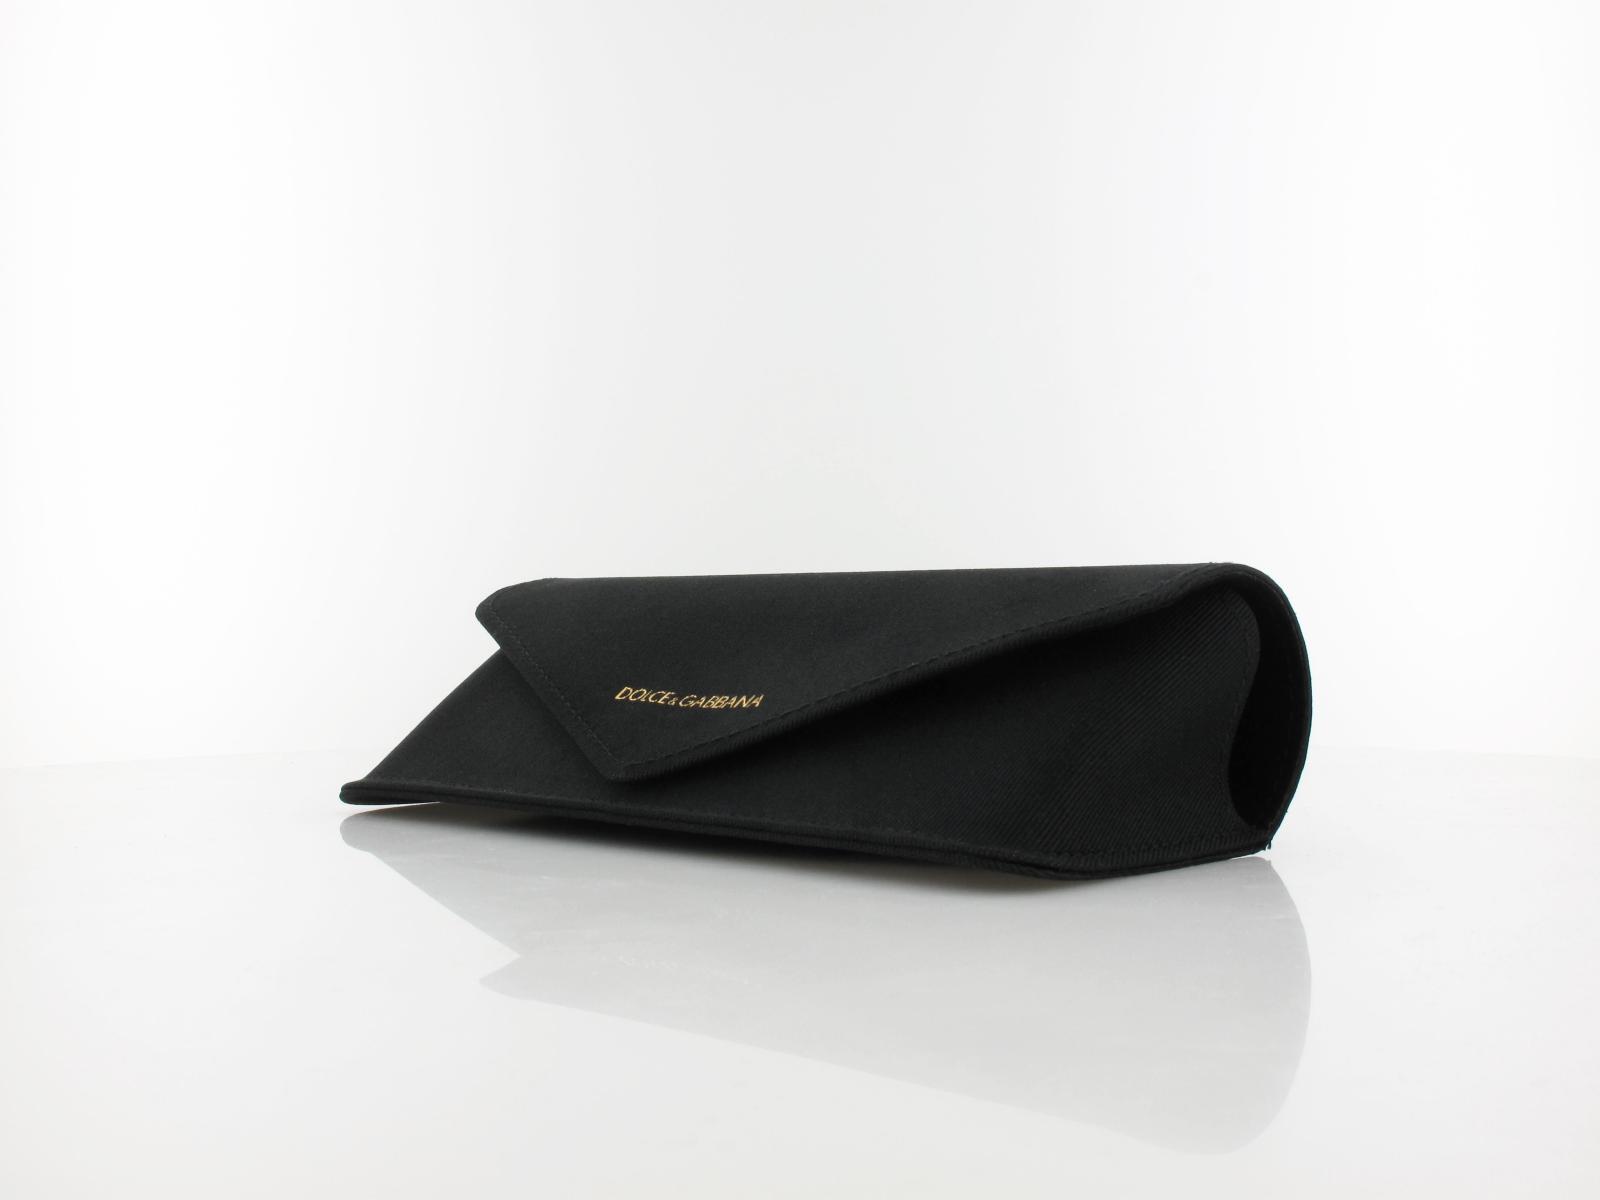 Dolce&Gabbana | DG6153 501/8G 55 | black / grey gradient